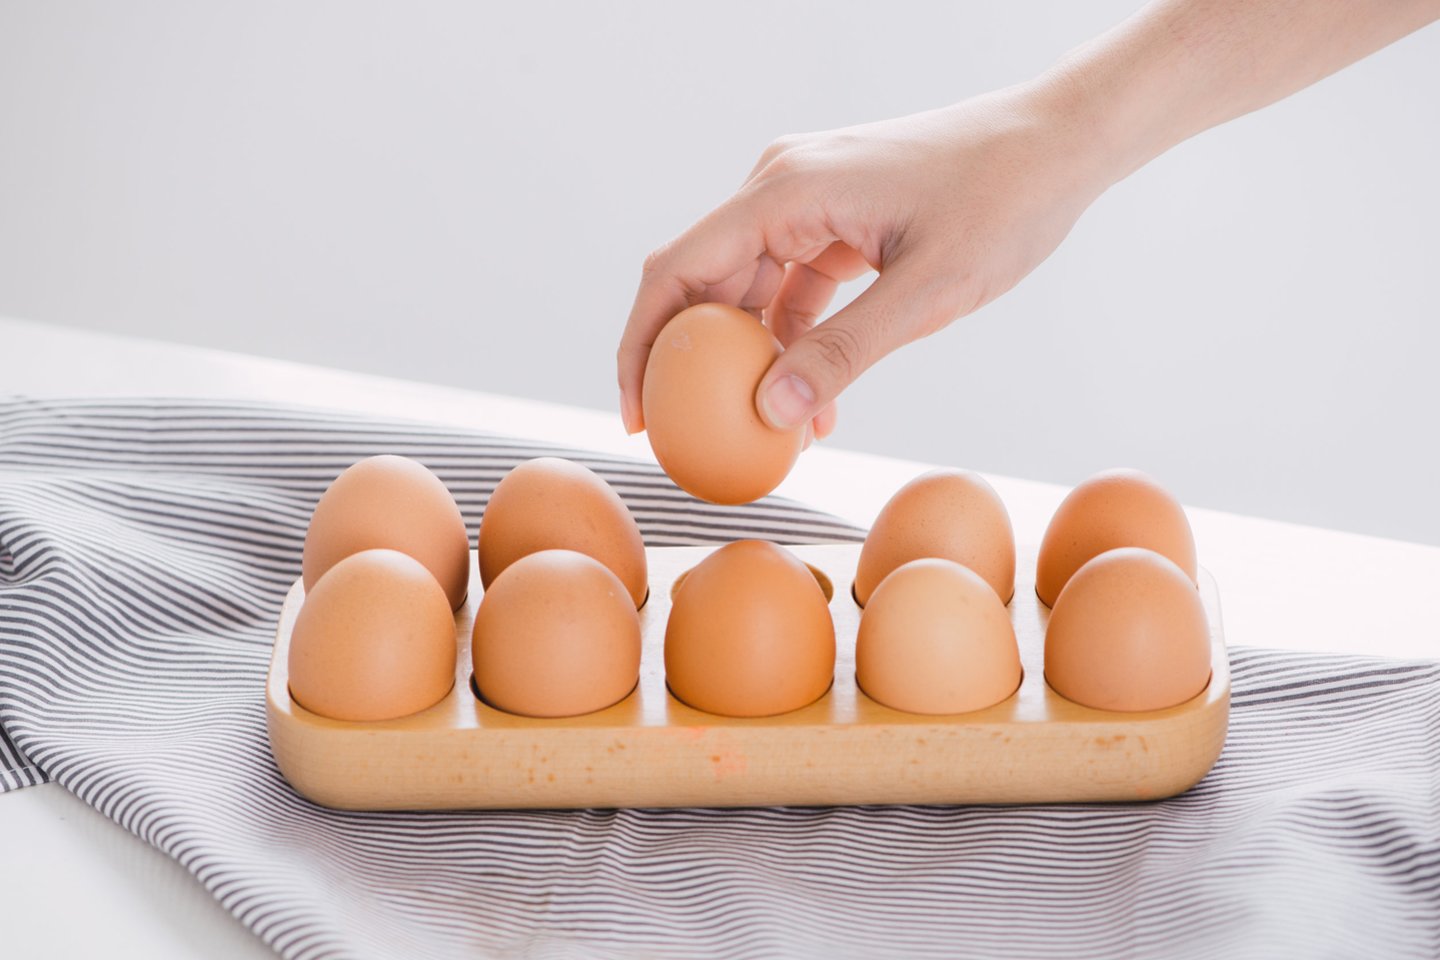 Maistine verte kiaušiniai yra itin vertingas produktas, kurį tiesiog būtina įtraukti į kasdienį mitybos racioną.<br>123rf nuotr.